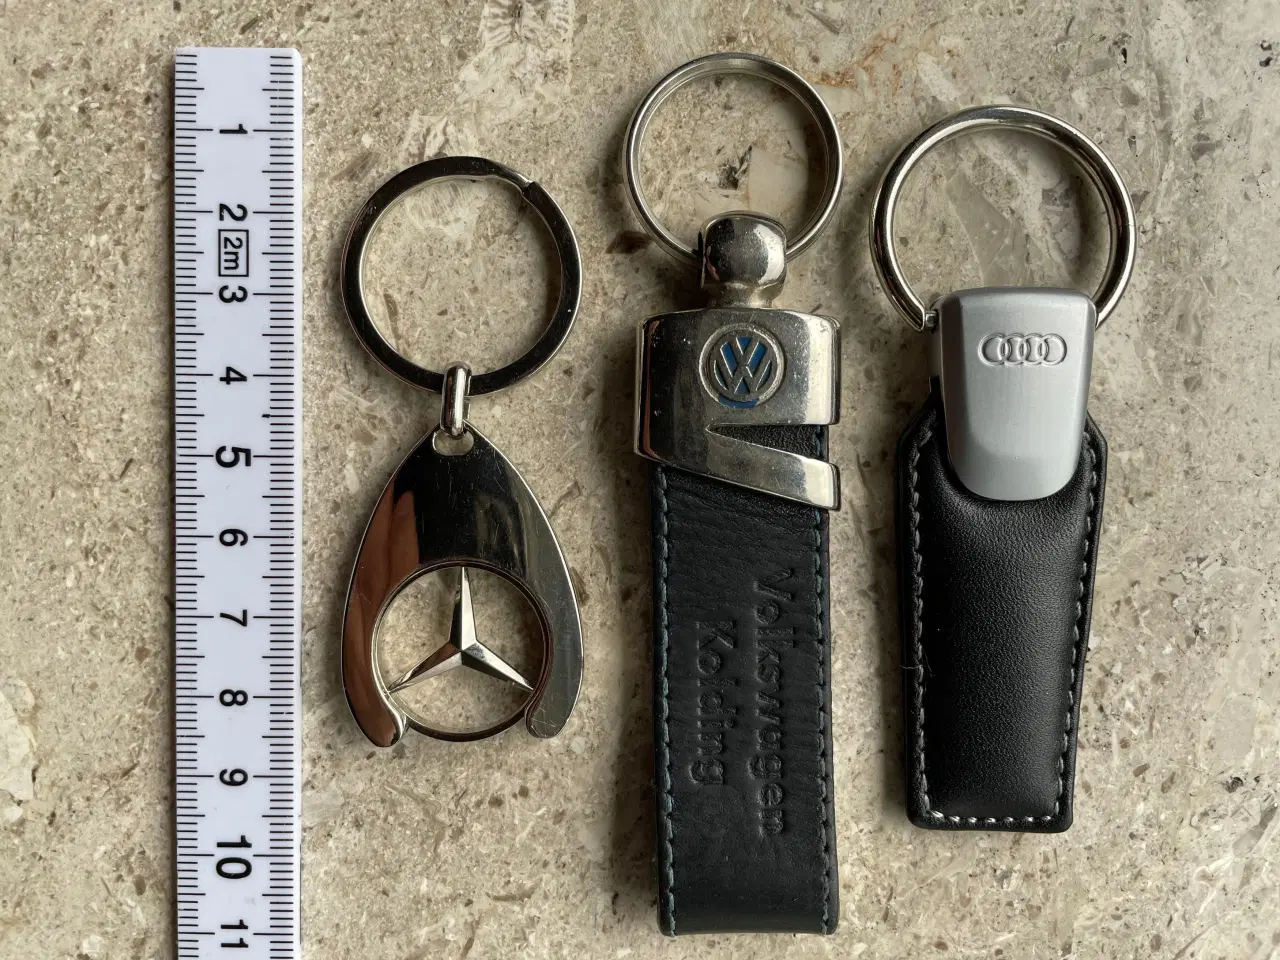 Billede 7 - VW nøglering i metal og læder